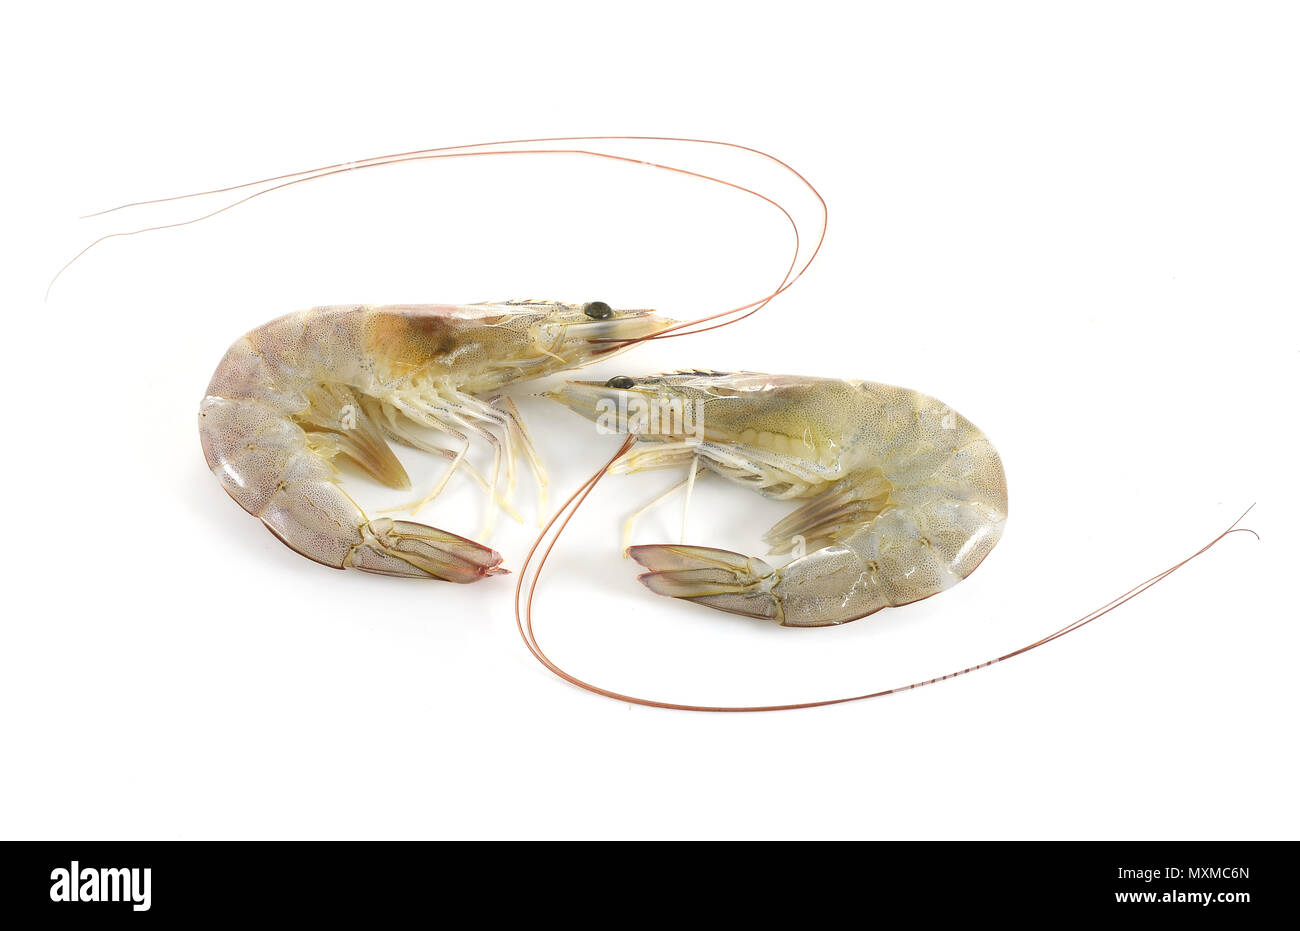 shrimps on white background Stock Photo